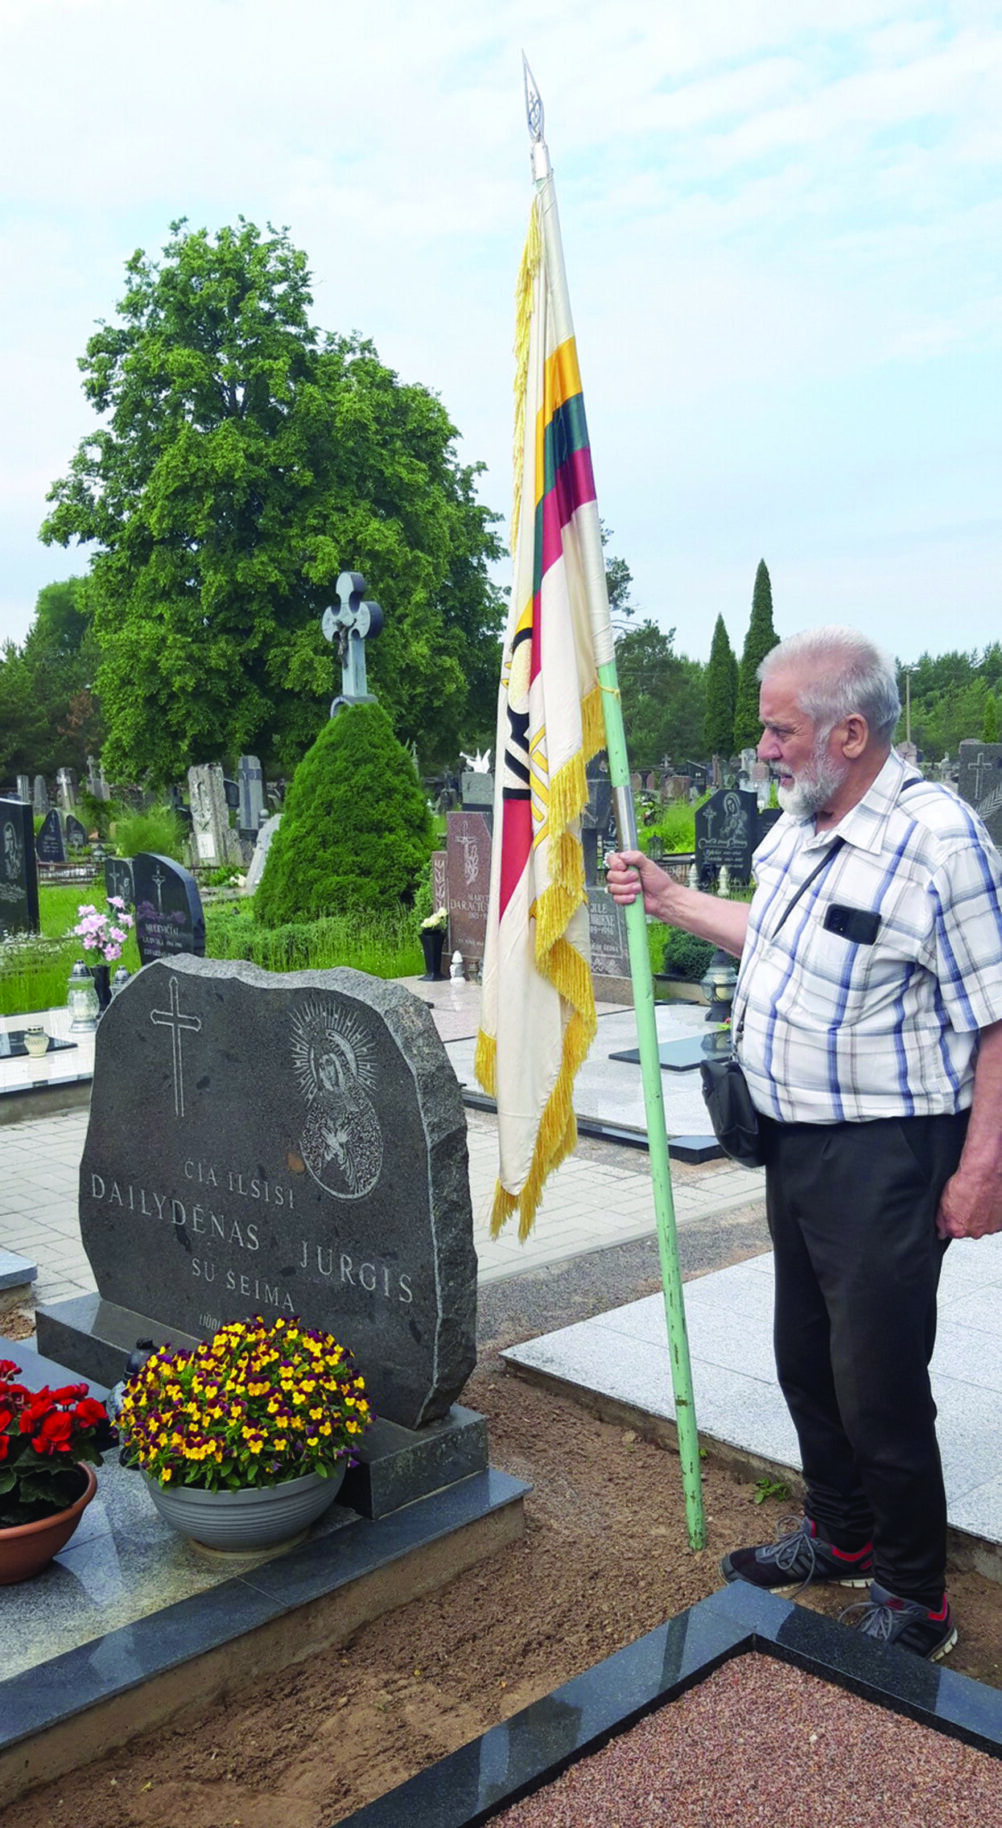 Gerimanto Kaklausko iniciatyva pastatytas ne vienas paminklas Lietuvos partizanams. Buvęs tremtinys sako, kad partizanų atminimas svarbus visiems lietuviams.